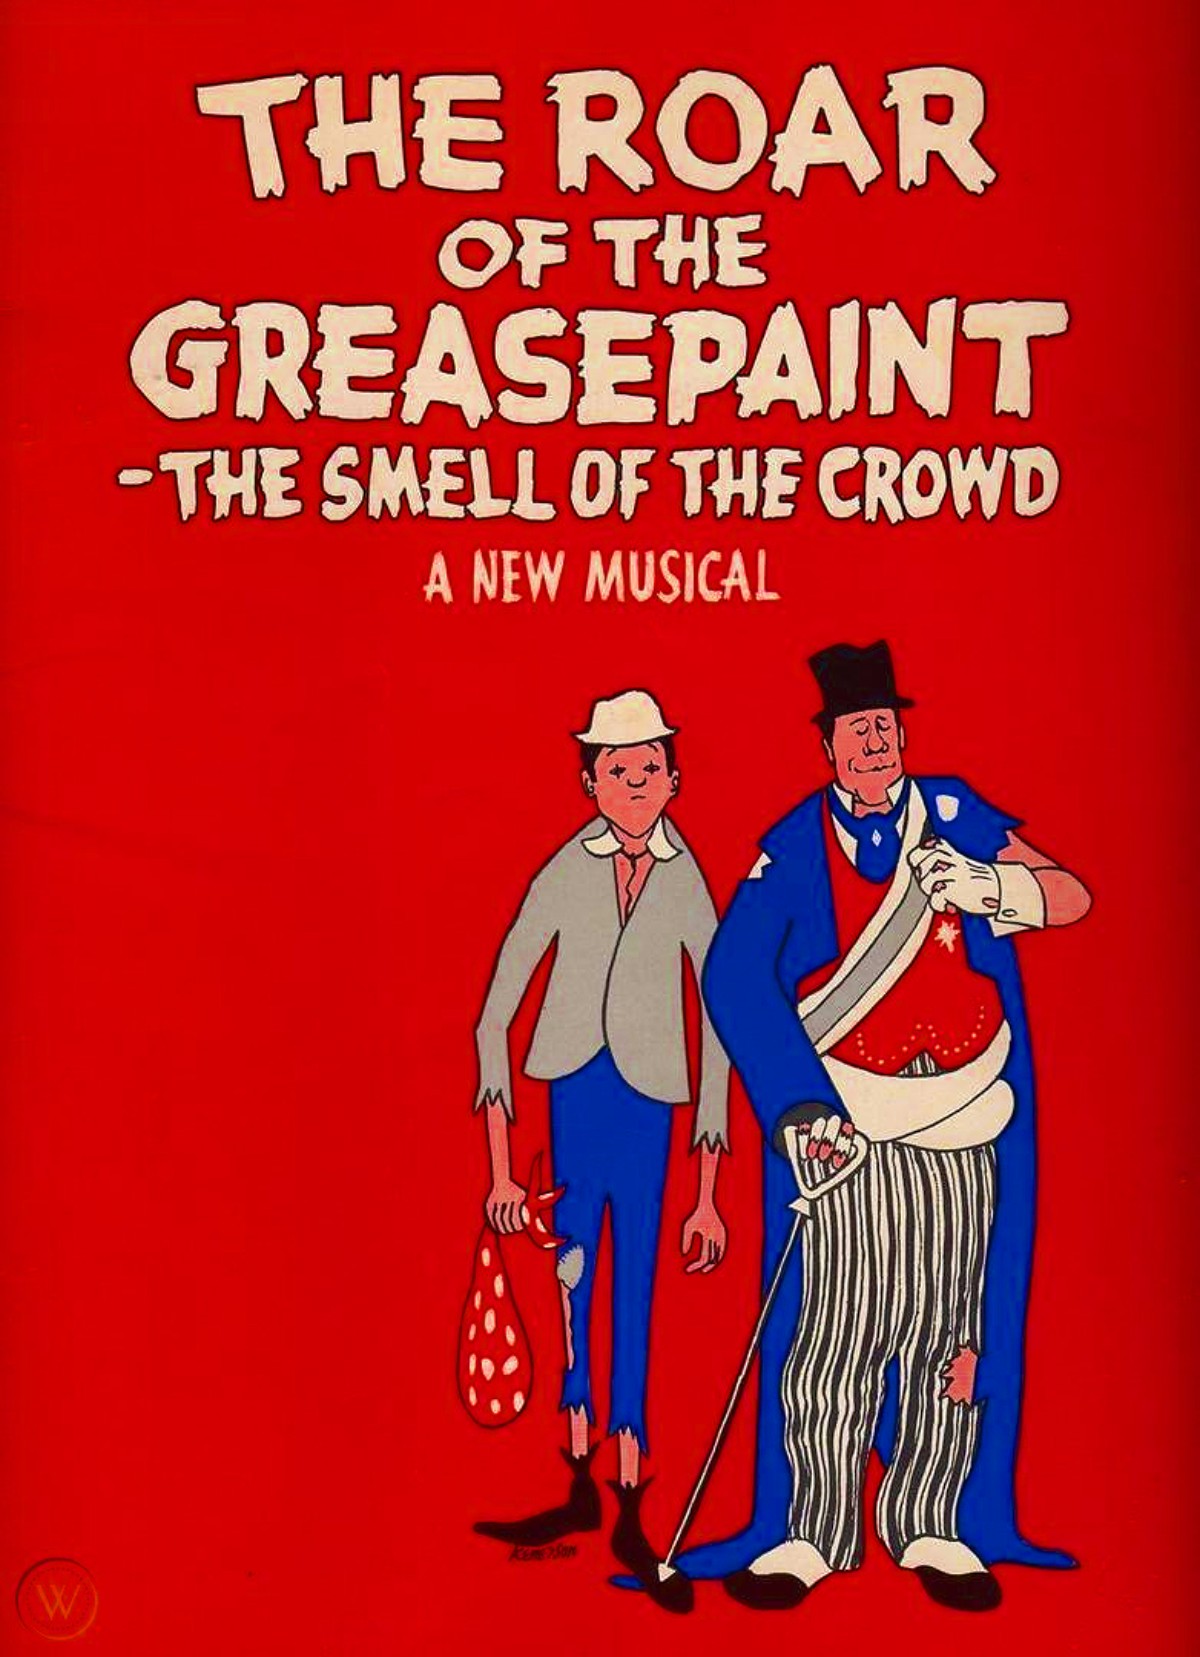 "Le rugissement de la peinture grasse - L'odeur de la foule" (comédie musicale de 1964, affiche)